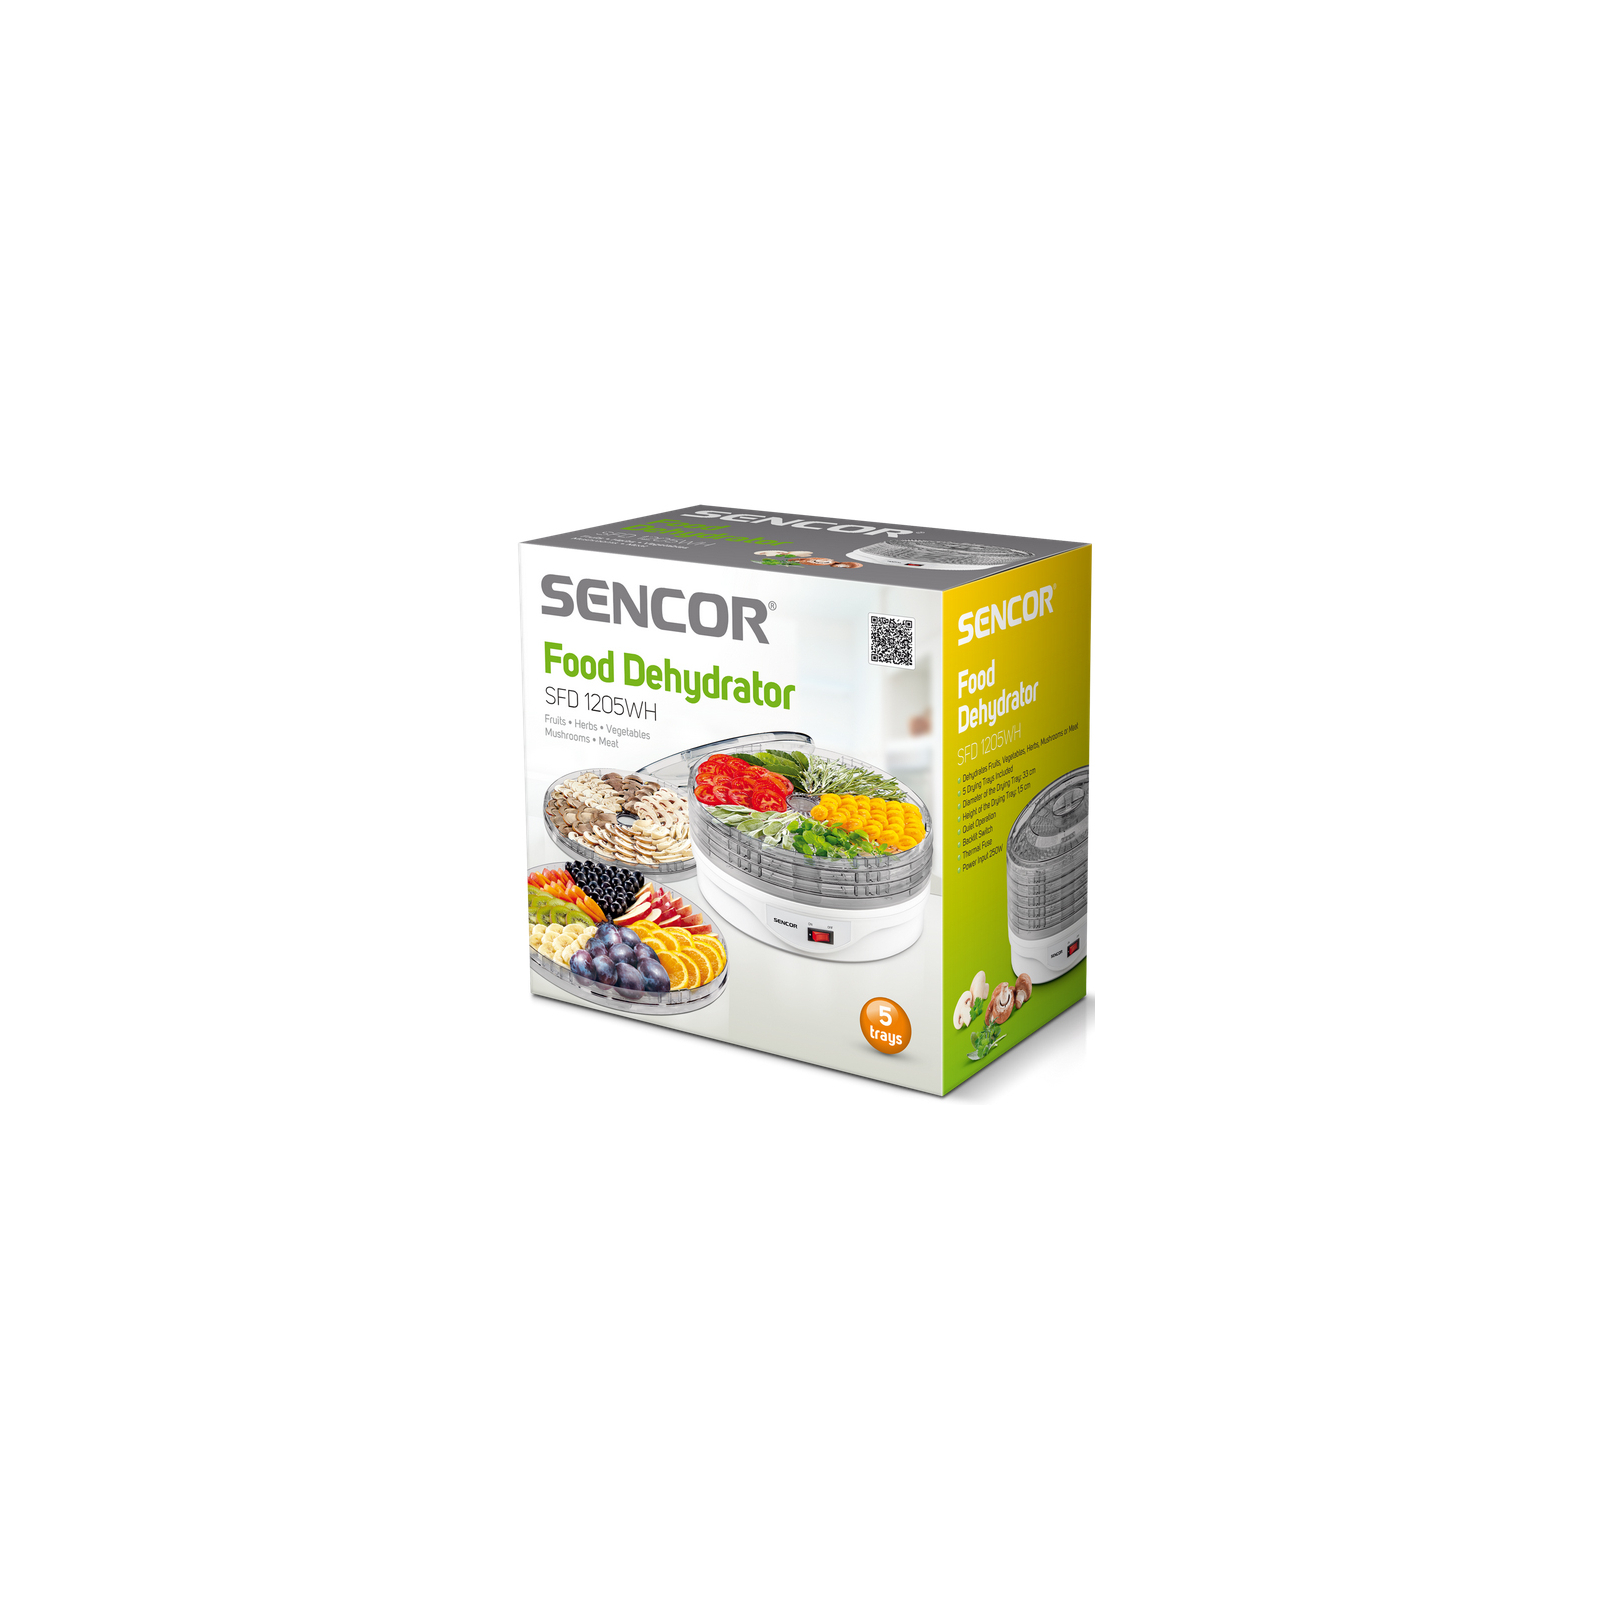 Сушка для овощей и фруктов Sencor SFD 1205 WH (SFD1205WH) изображение 3